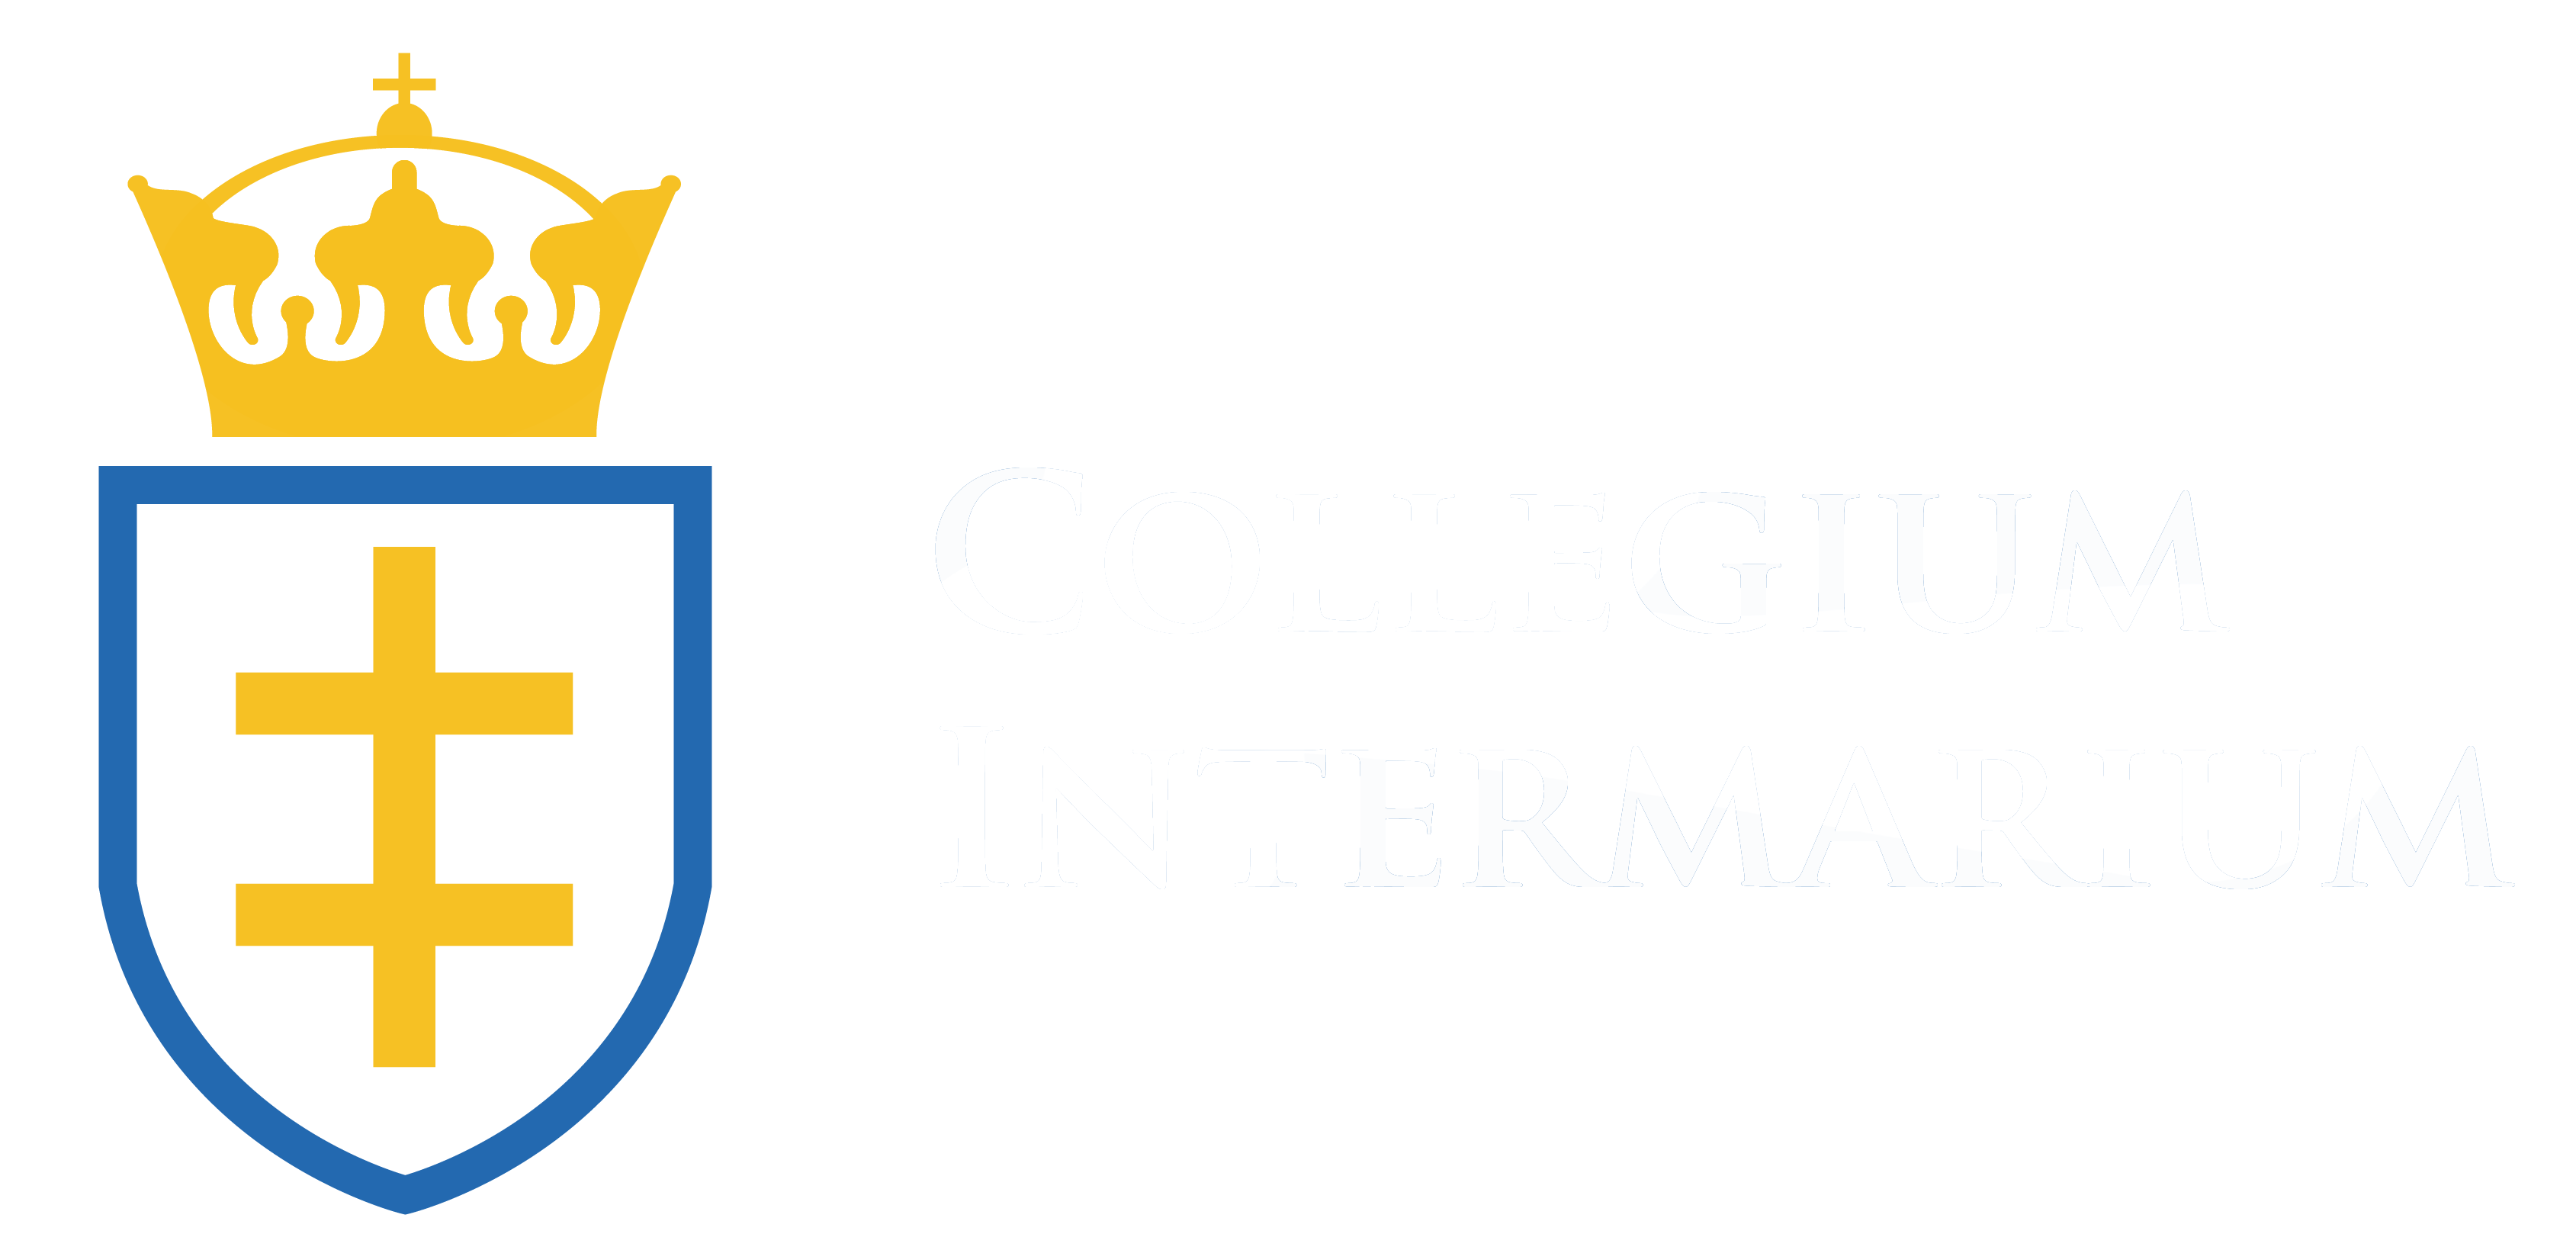 Collegium Intermarium